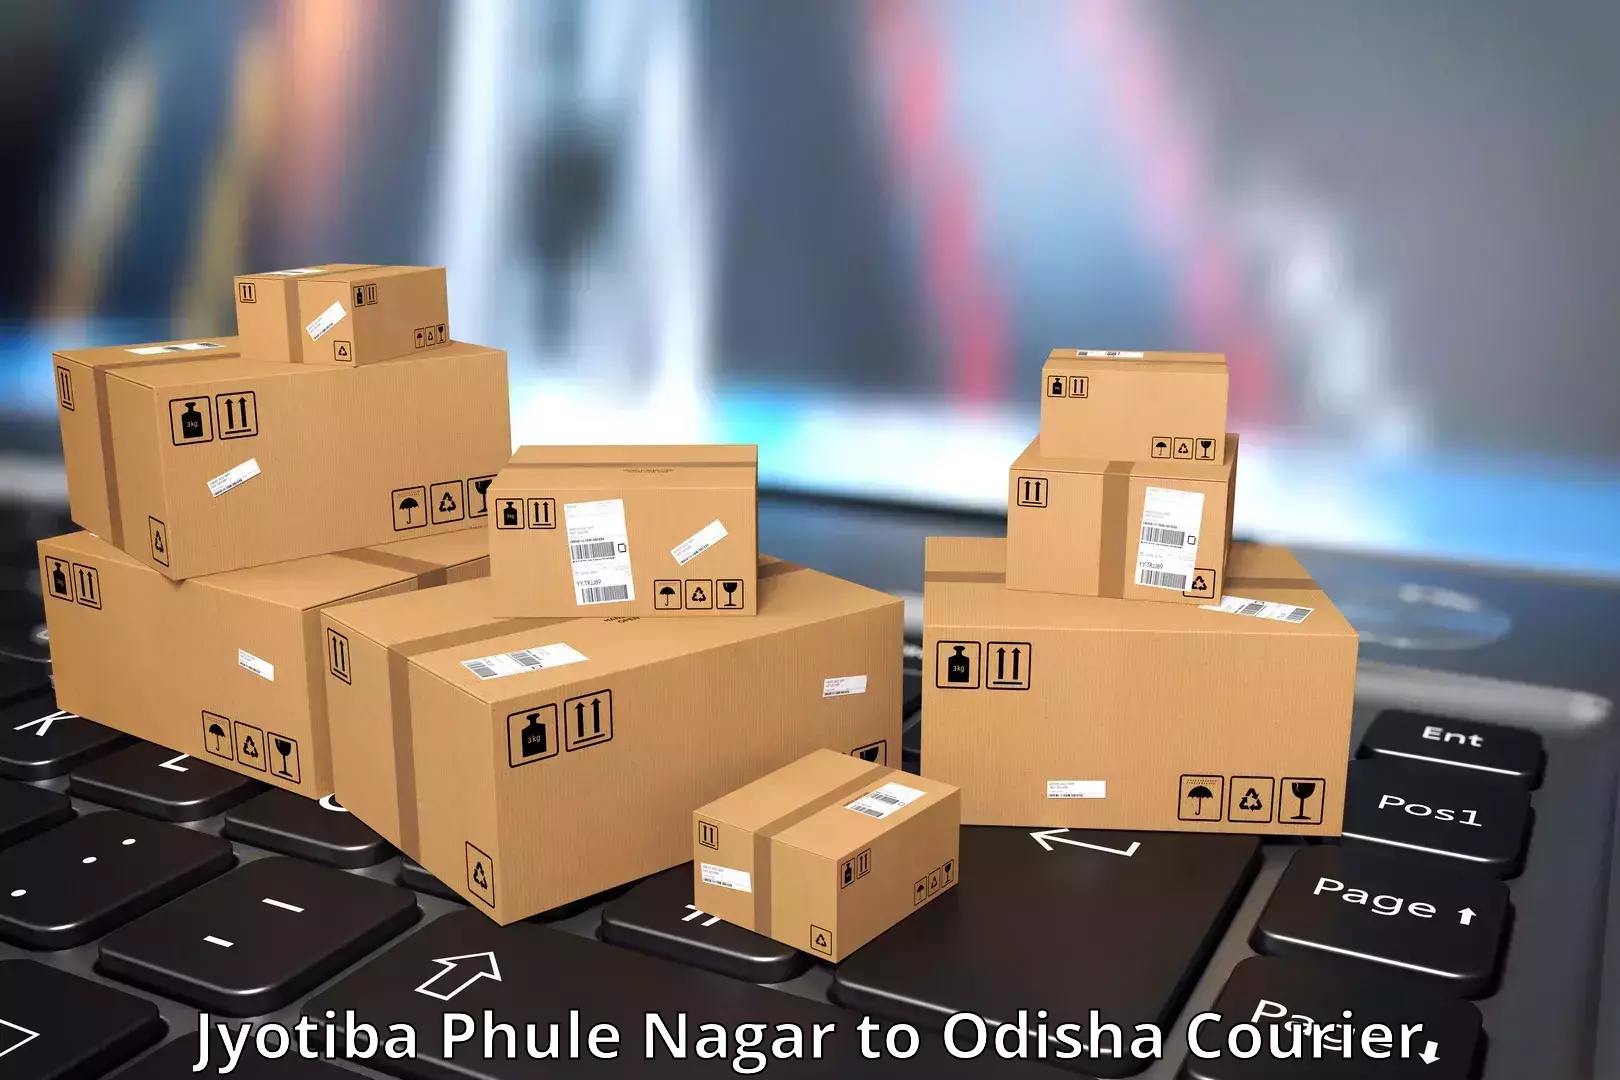 High-capacity shipping options Jyotiba Phule Nagar to Chandipur